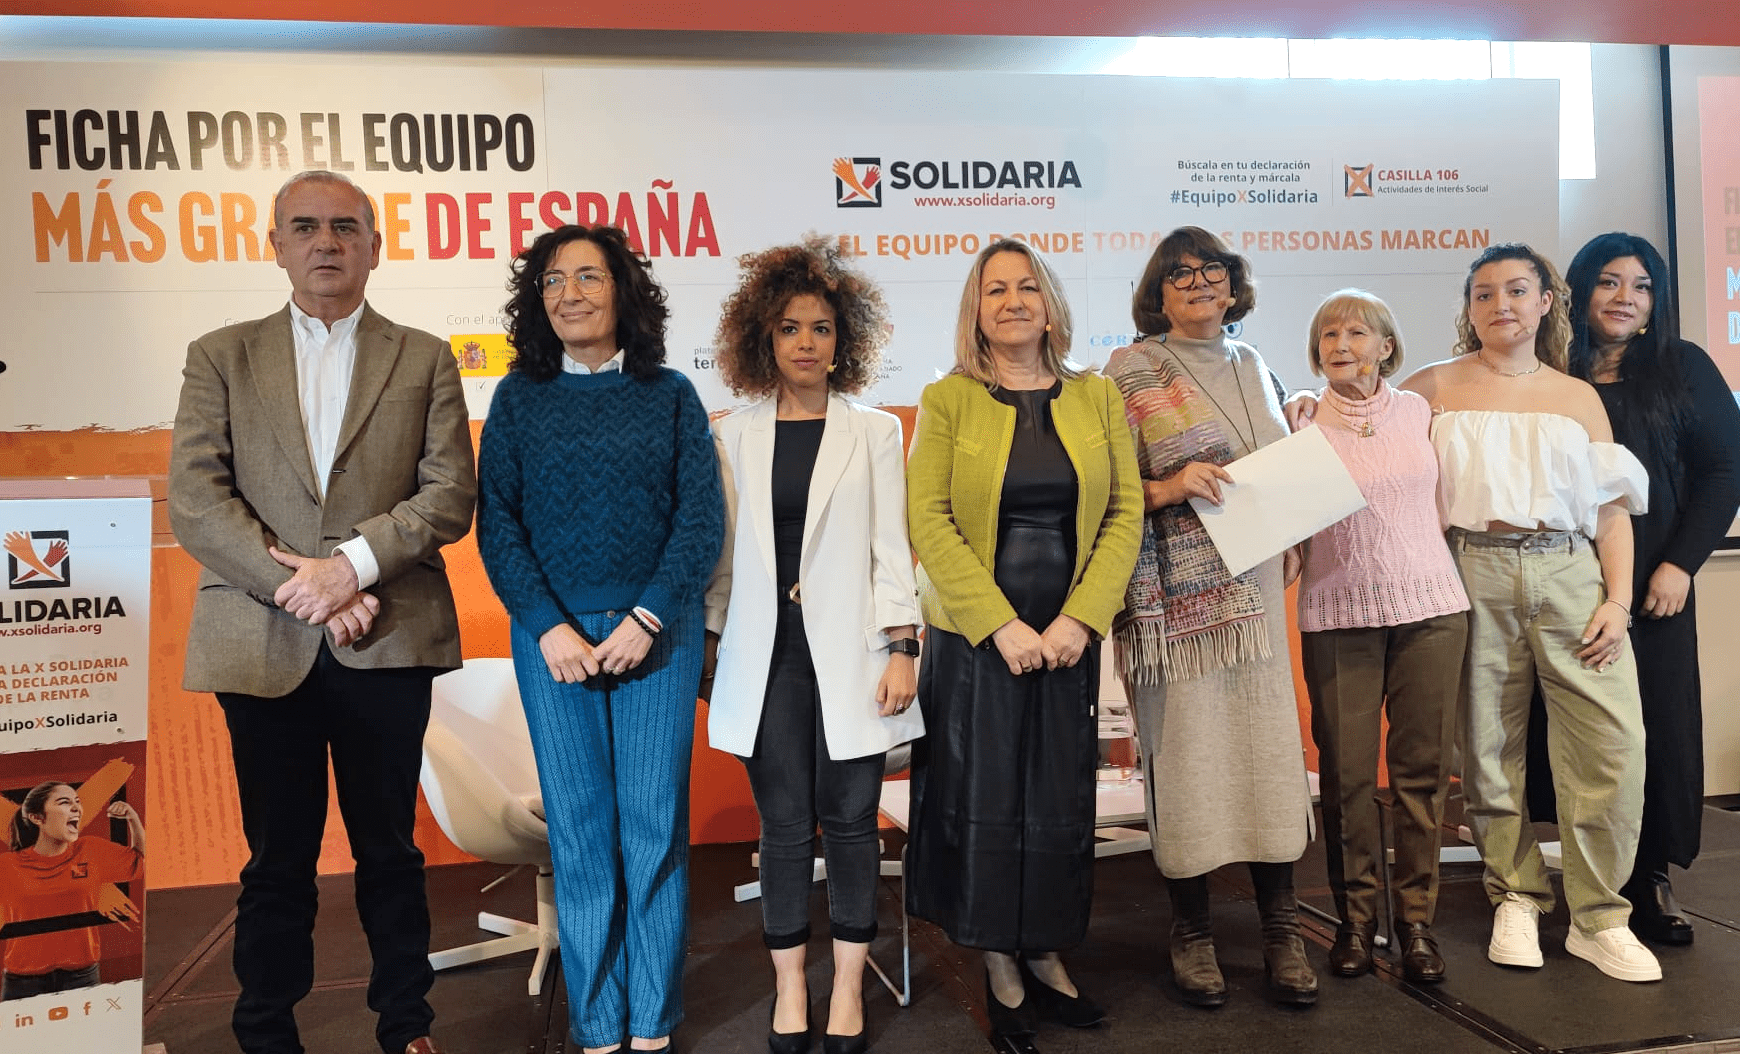 Ir a : El equipo más grande de España ya suma más de 12 millones de personas que marcan la “X Solidaria” en su renta